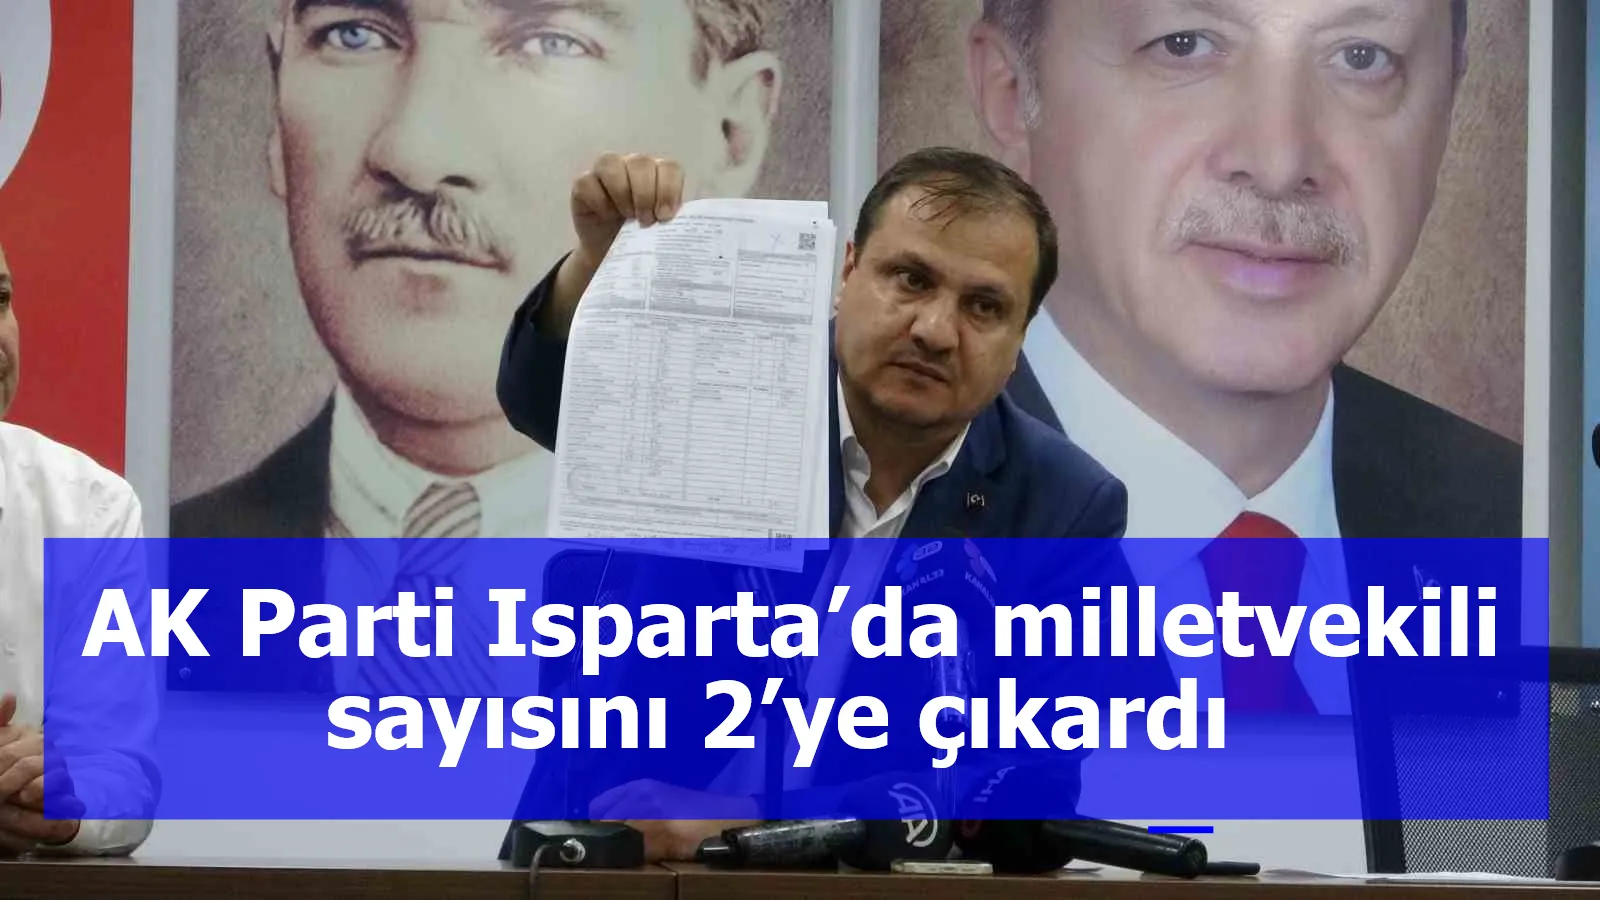 AK Parti Isparta’da milletvekili sayısını 2’ye çıkardı